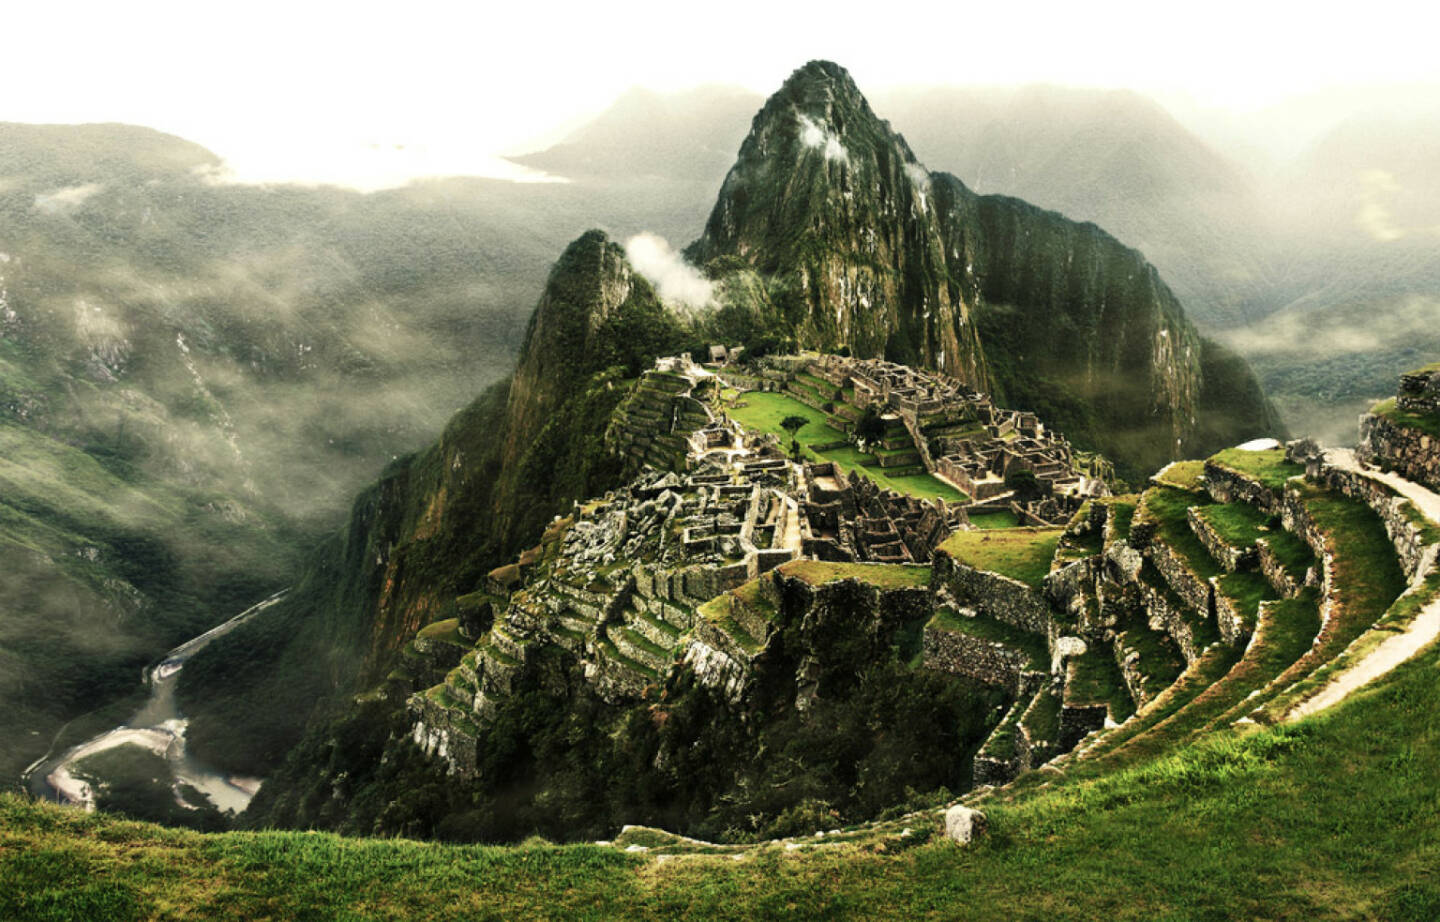 Machu Picchu, Peru, Südamerika, http://www.shutterstock.com/de/pic-173871023/stock-photo-machu-picchu-the-most-famous-lost-city-with-the-river-urubamba-located-near-cuzco-machu-picchu.html